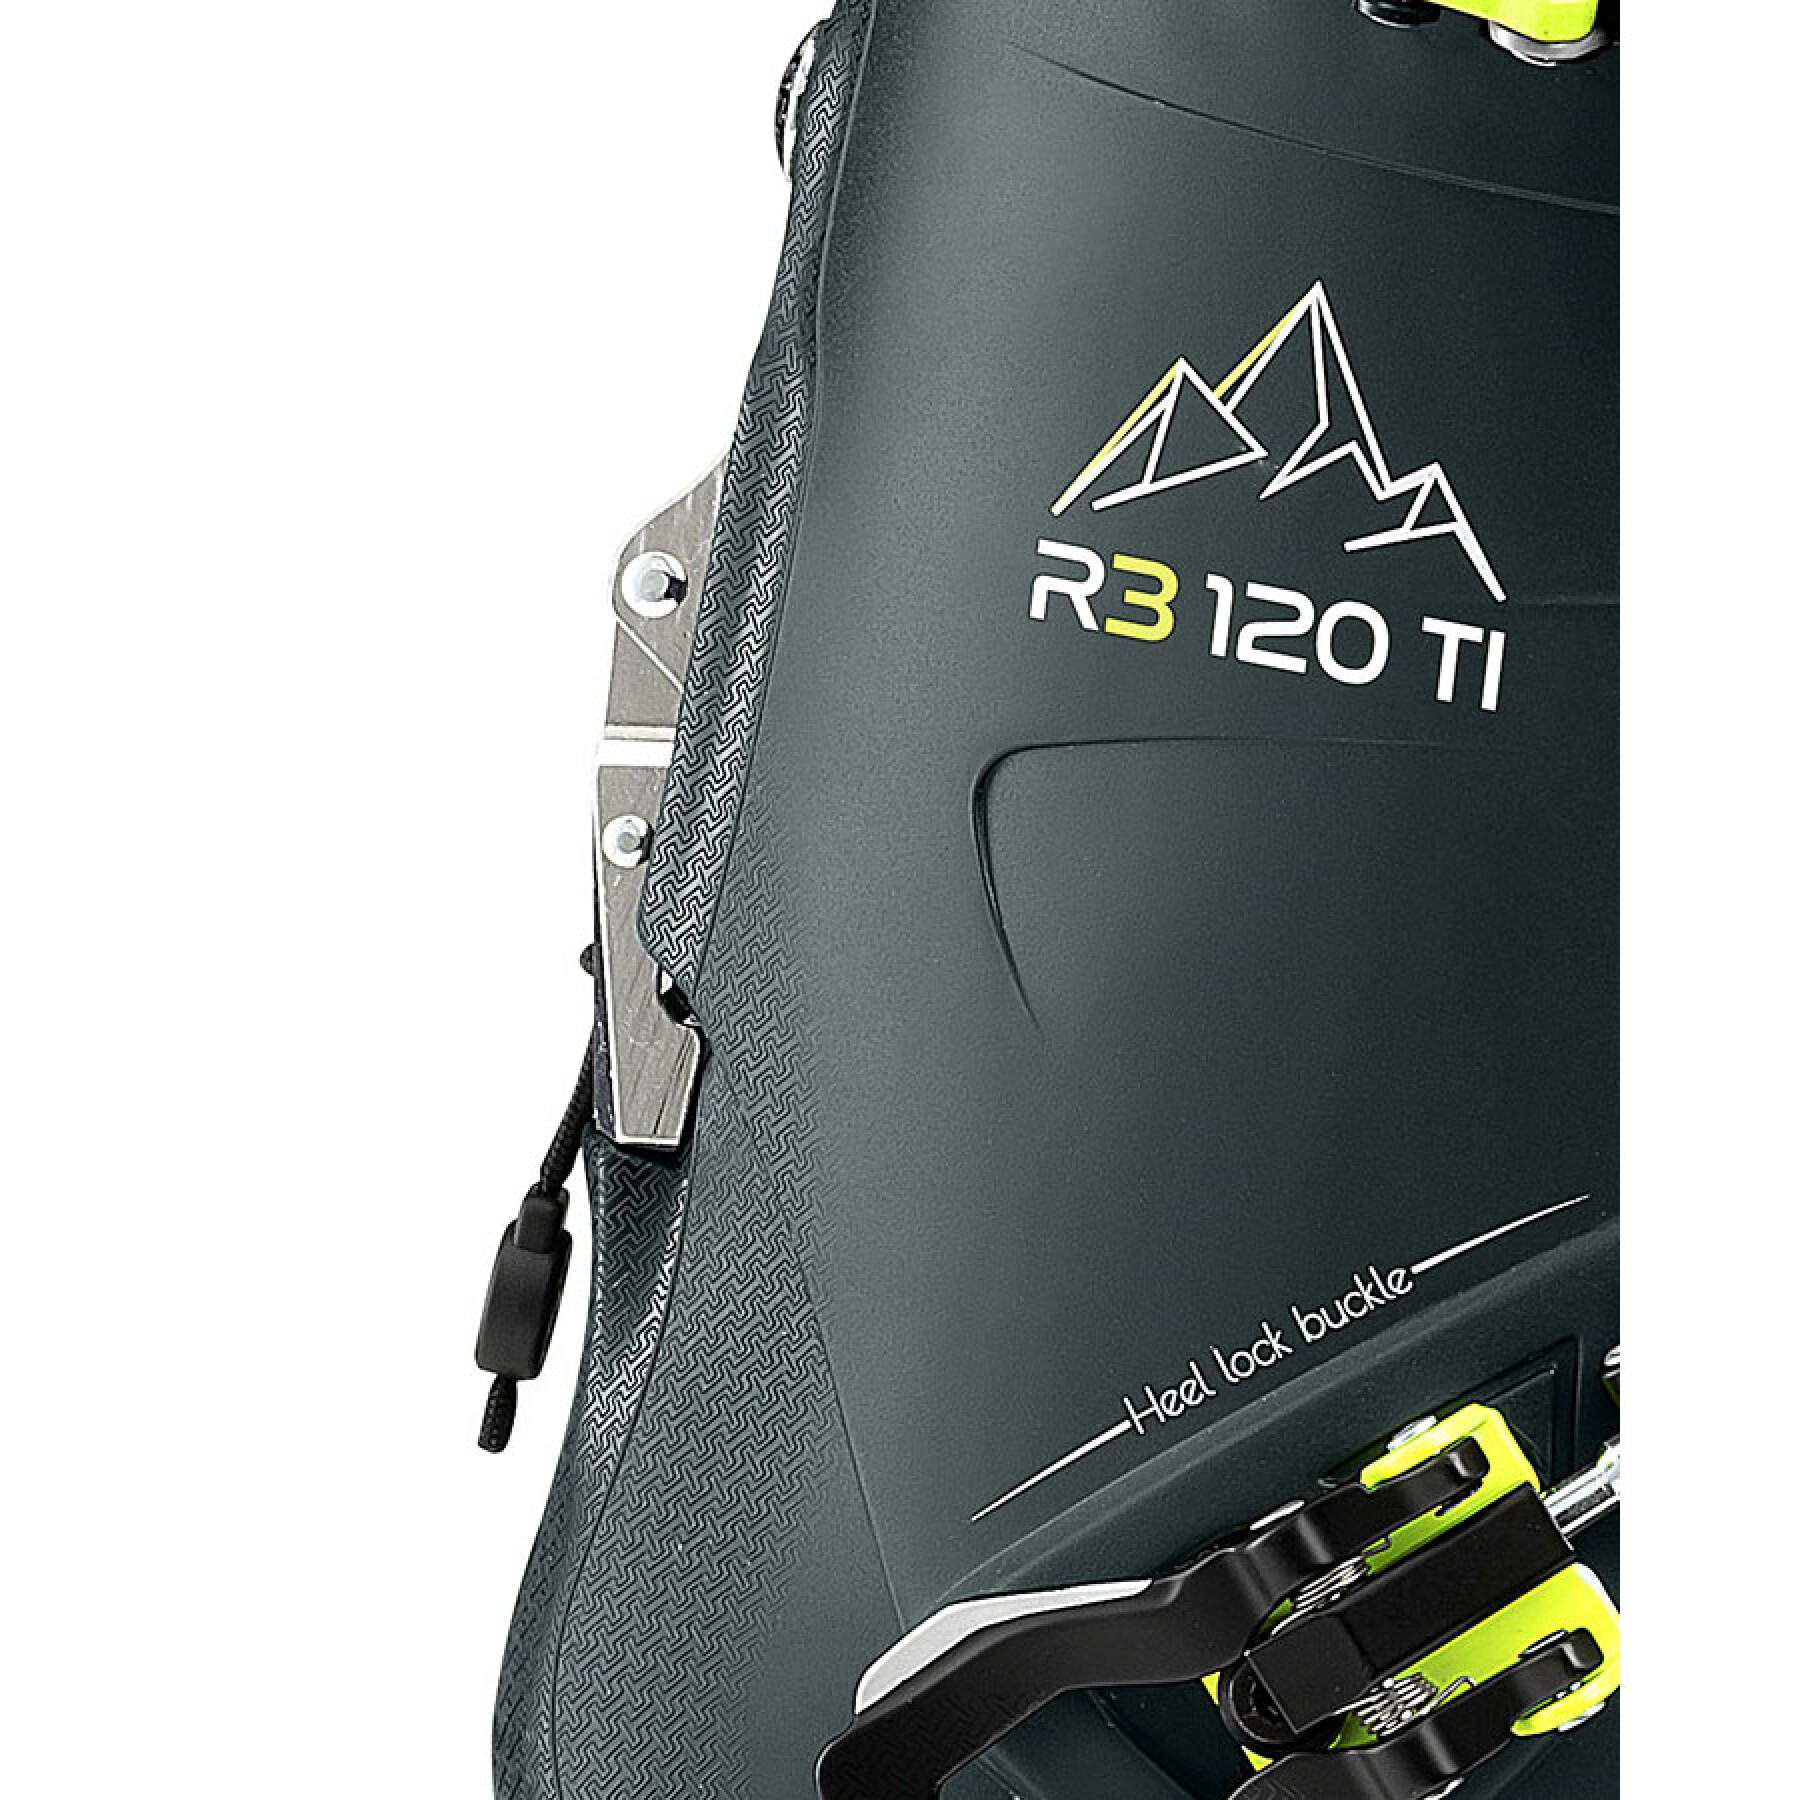 Botas de esqui Roxa R3 120 TI IR